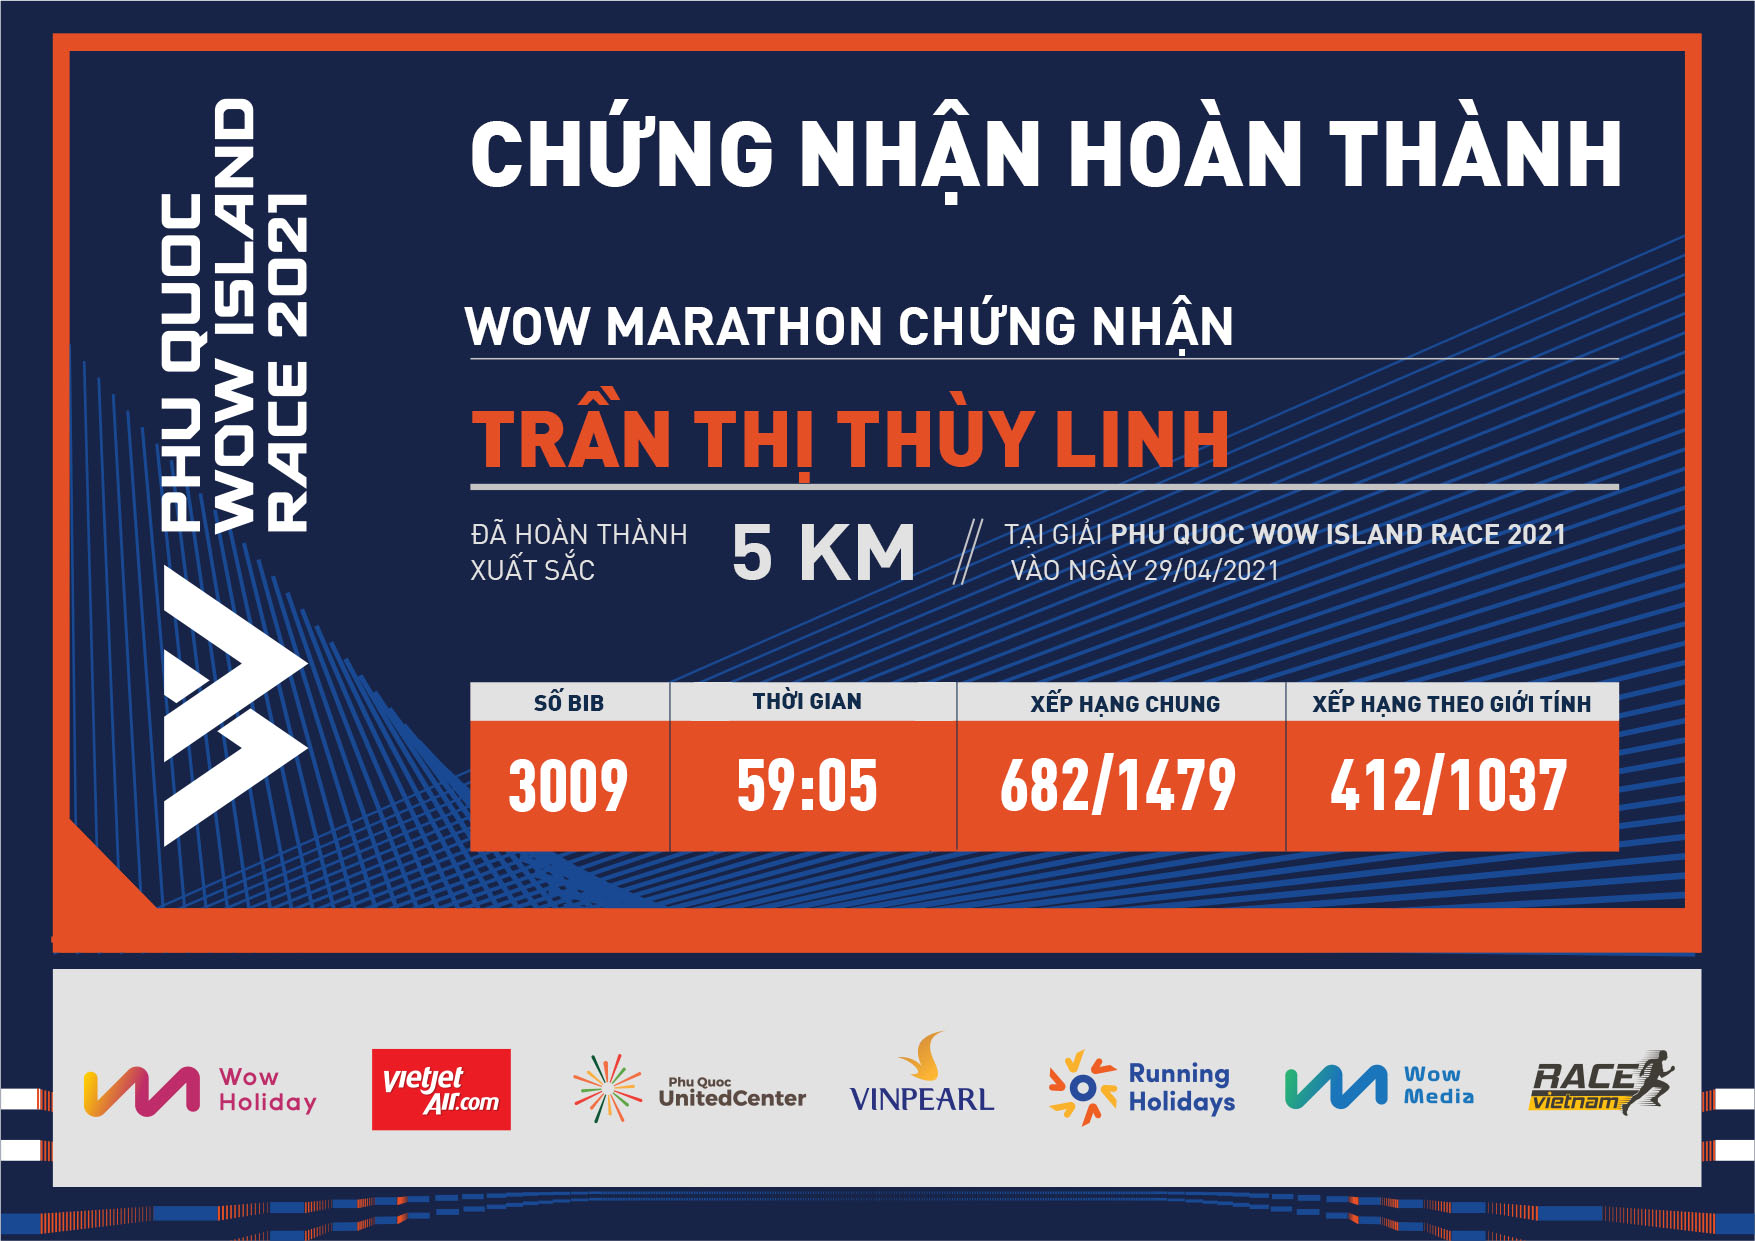 3009 - Trần Thị Thùy Linh